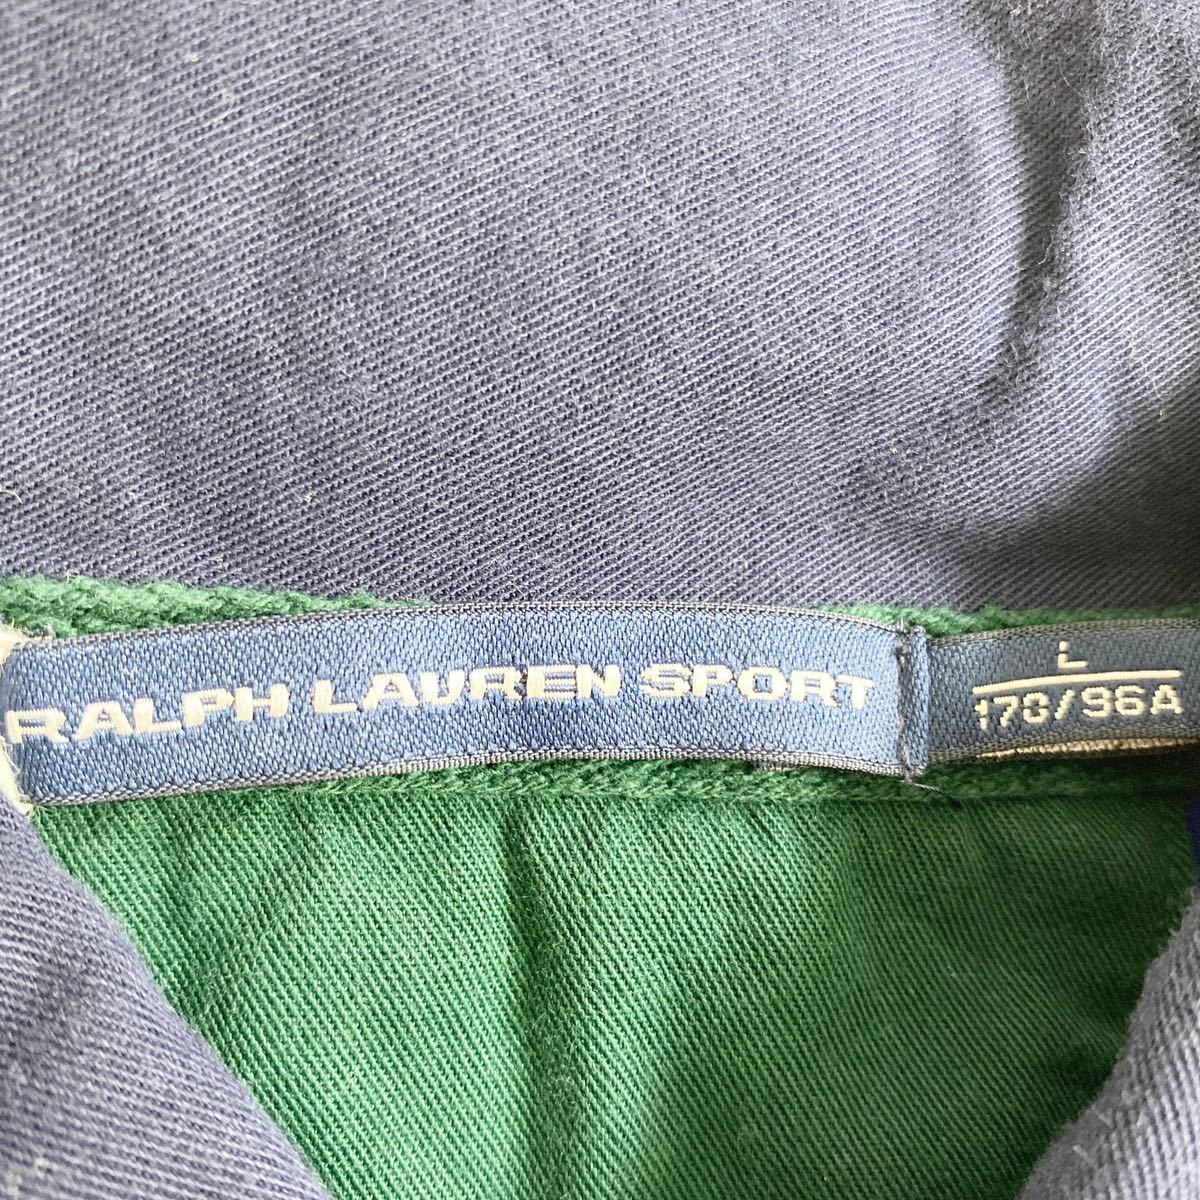 Ch31 RALPH LAUREN SPORT Ralph Lauren спорт tops рубашка с длинным рукавом рубашка-поло с длинным рукавом Golf одежда хлопок 100%. изначальный вышивка мужской джентльмен одежда L